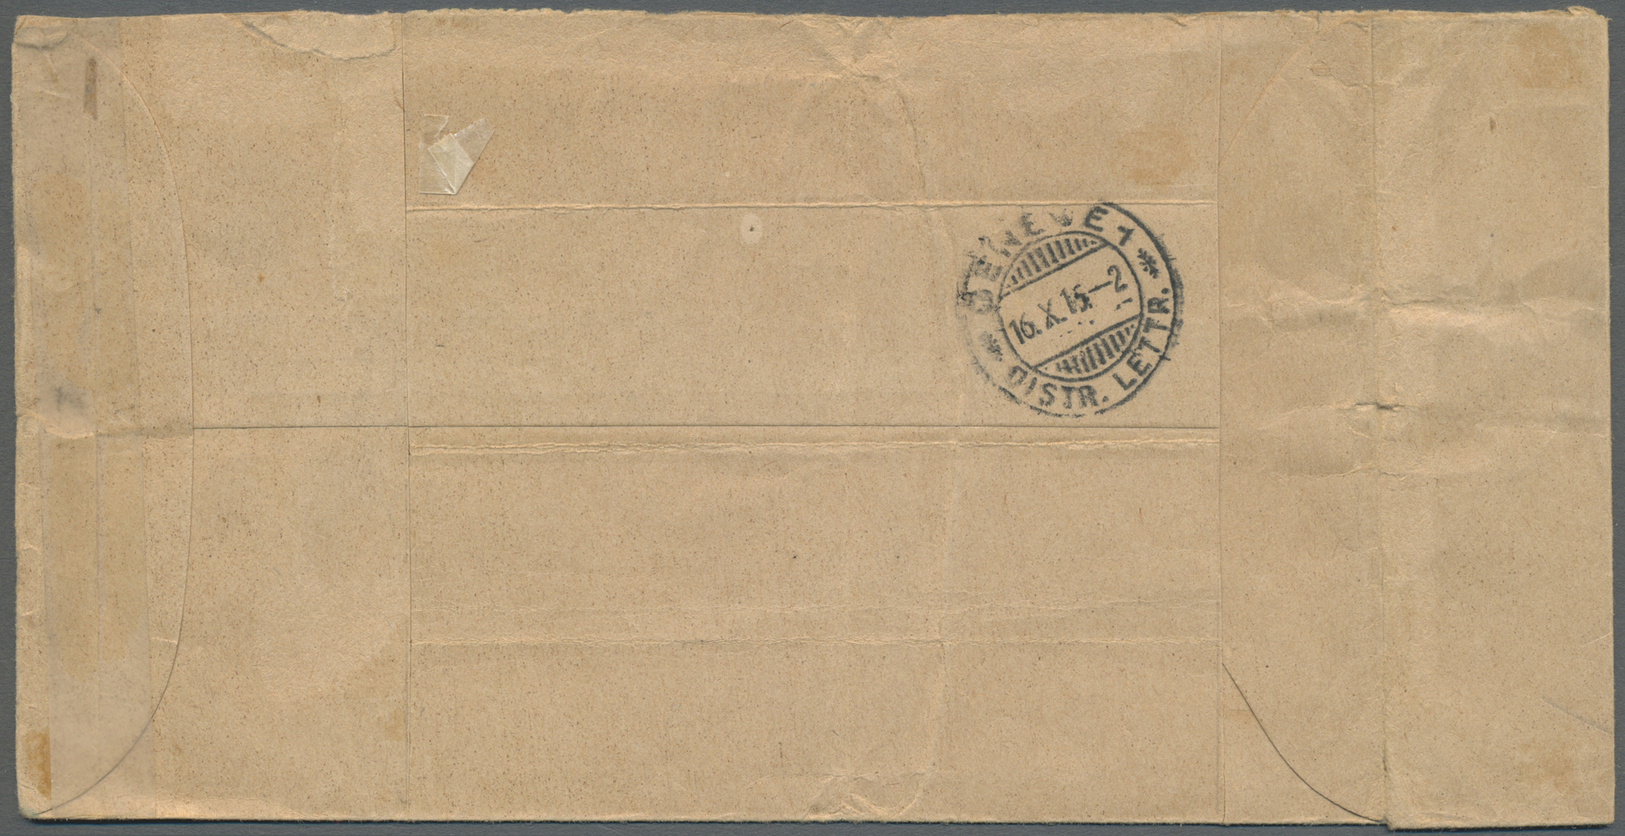 Br Großbritannien - Isle Of Man: 1915. Stampless Envelope Imprinted ‘Prisoner’s Aid Society, Camp 111, Knockaloe, - Isle Of Man